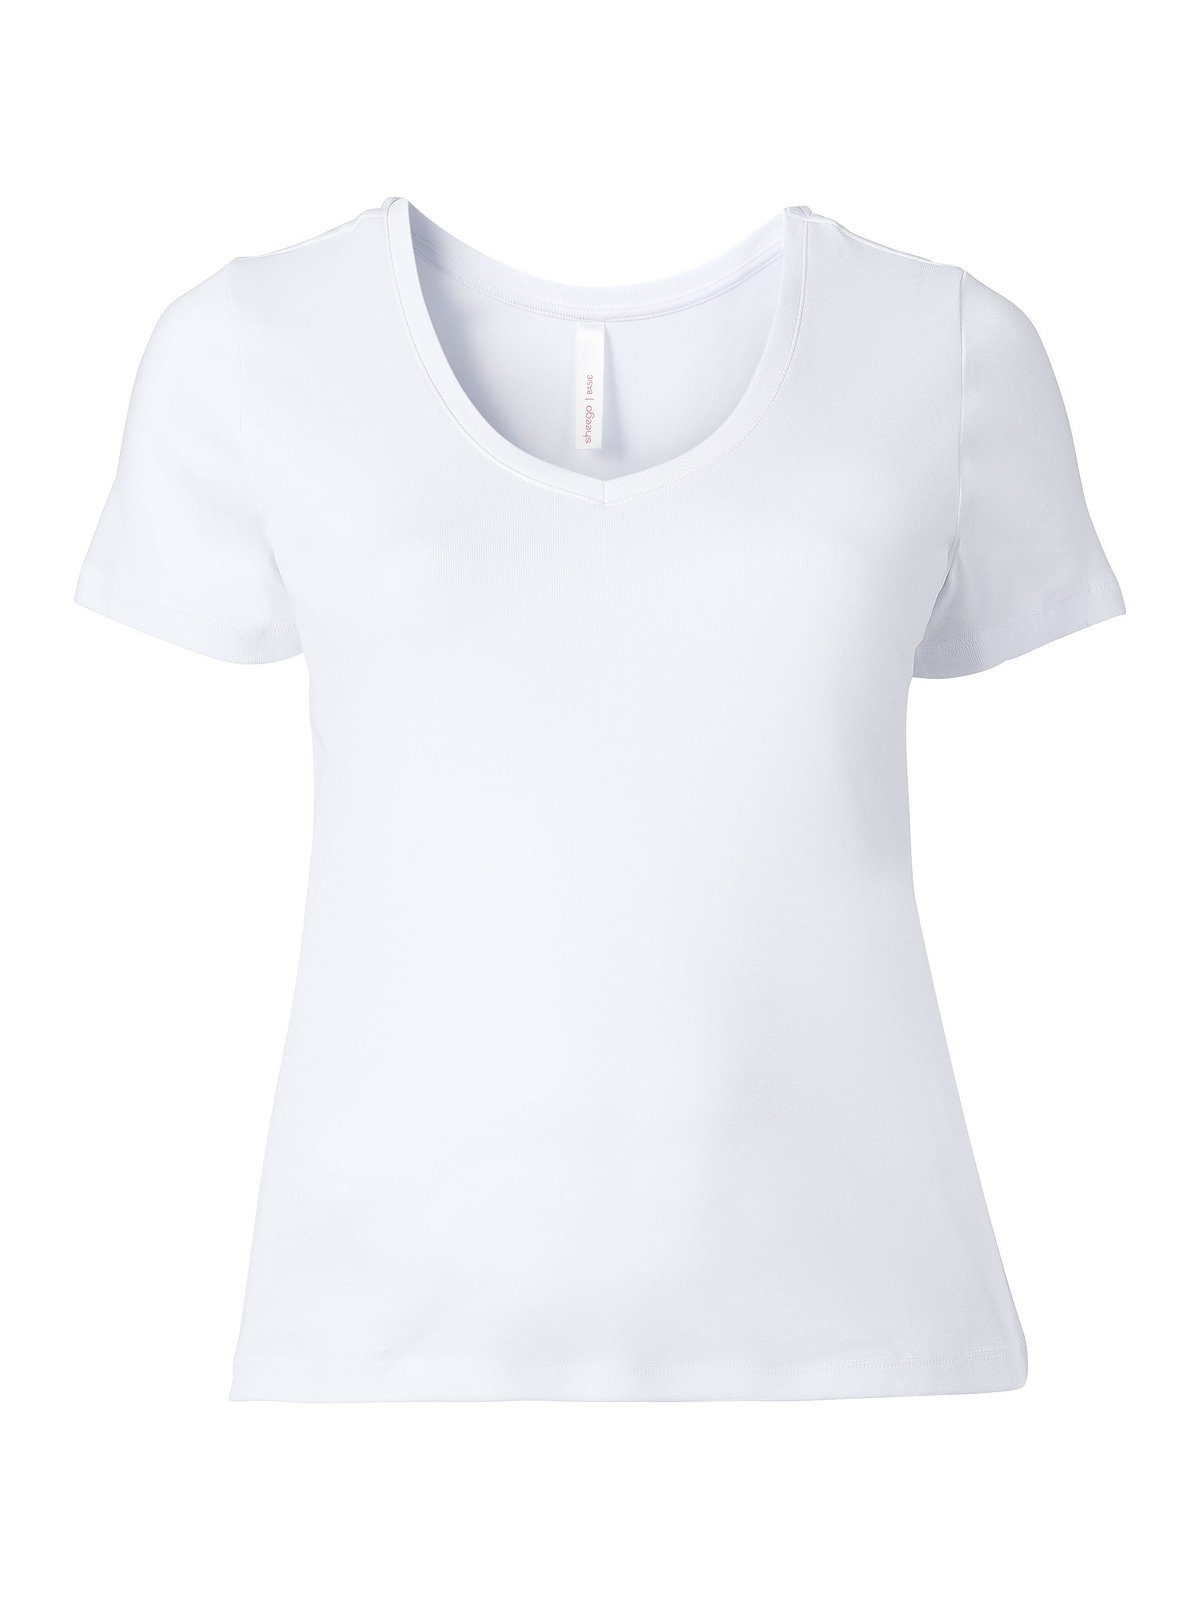 Sheego T-Shirt Größen Qualität aus gerippter Große weiß fein